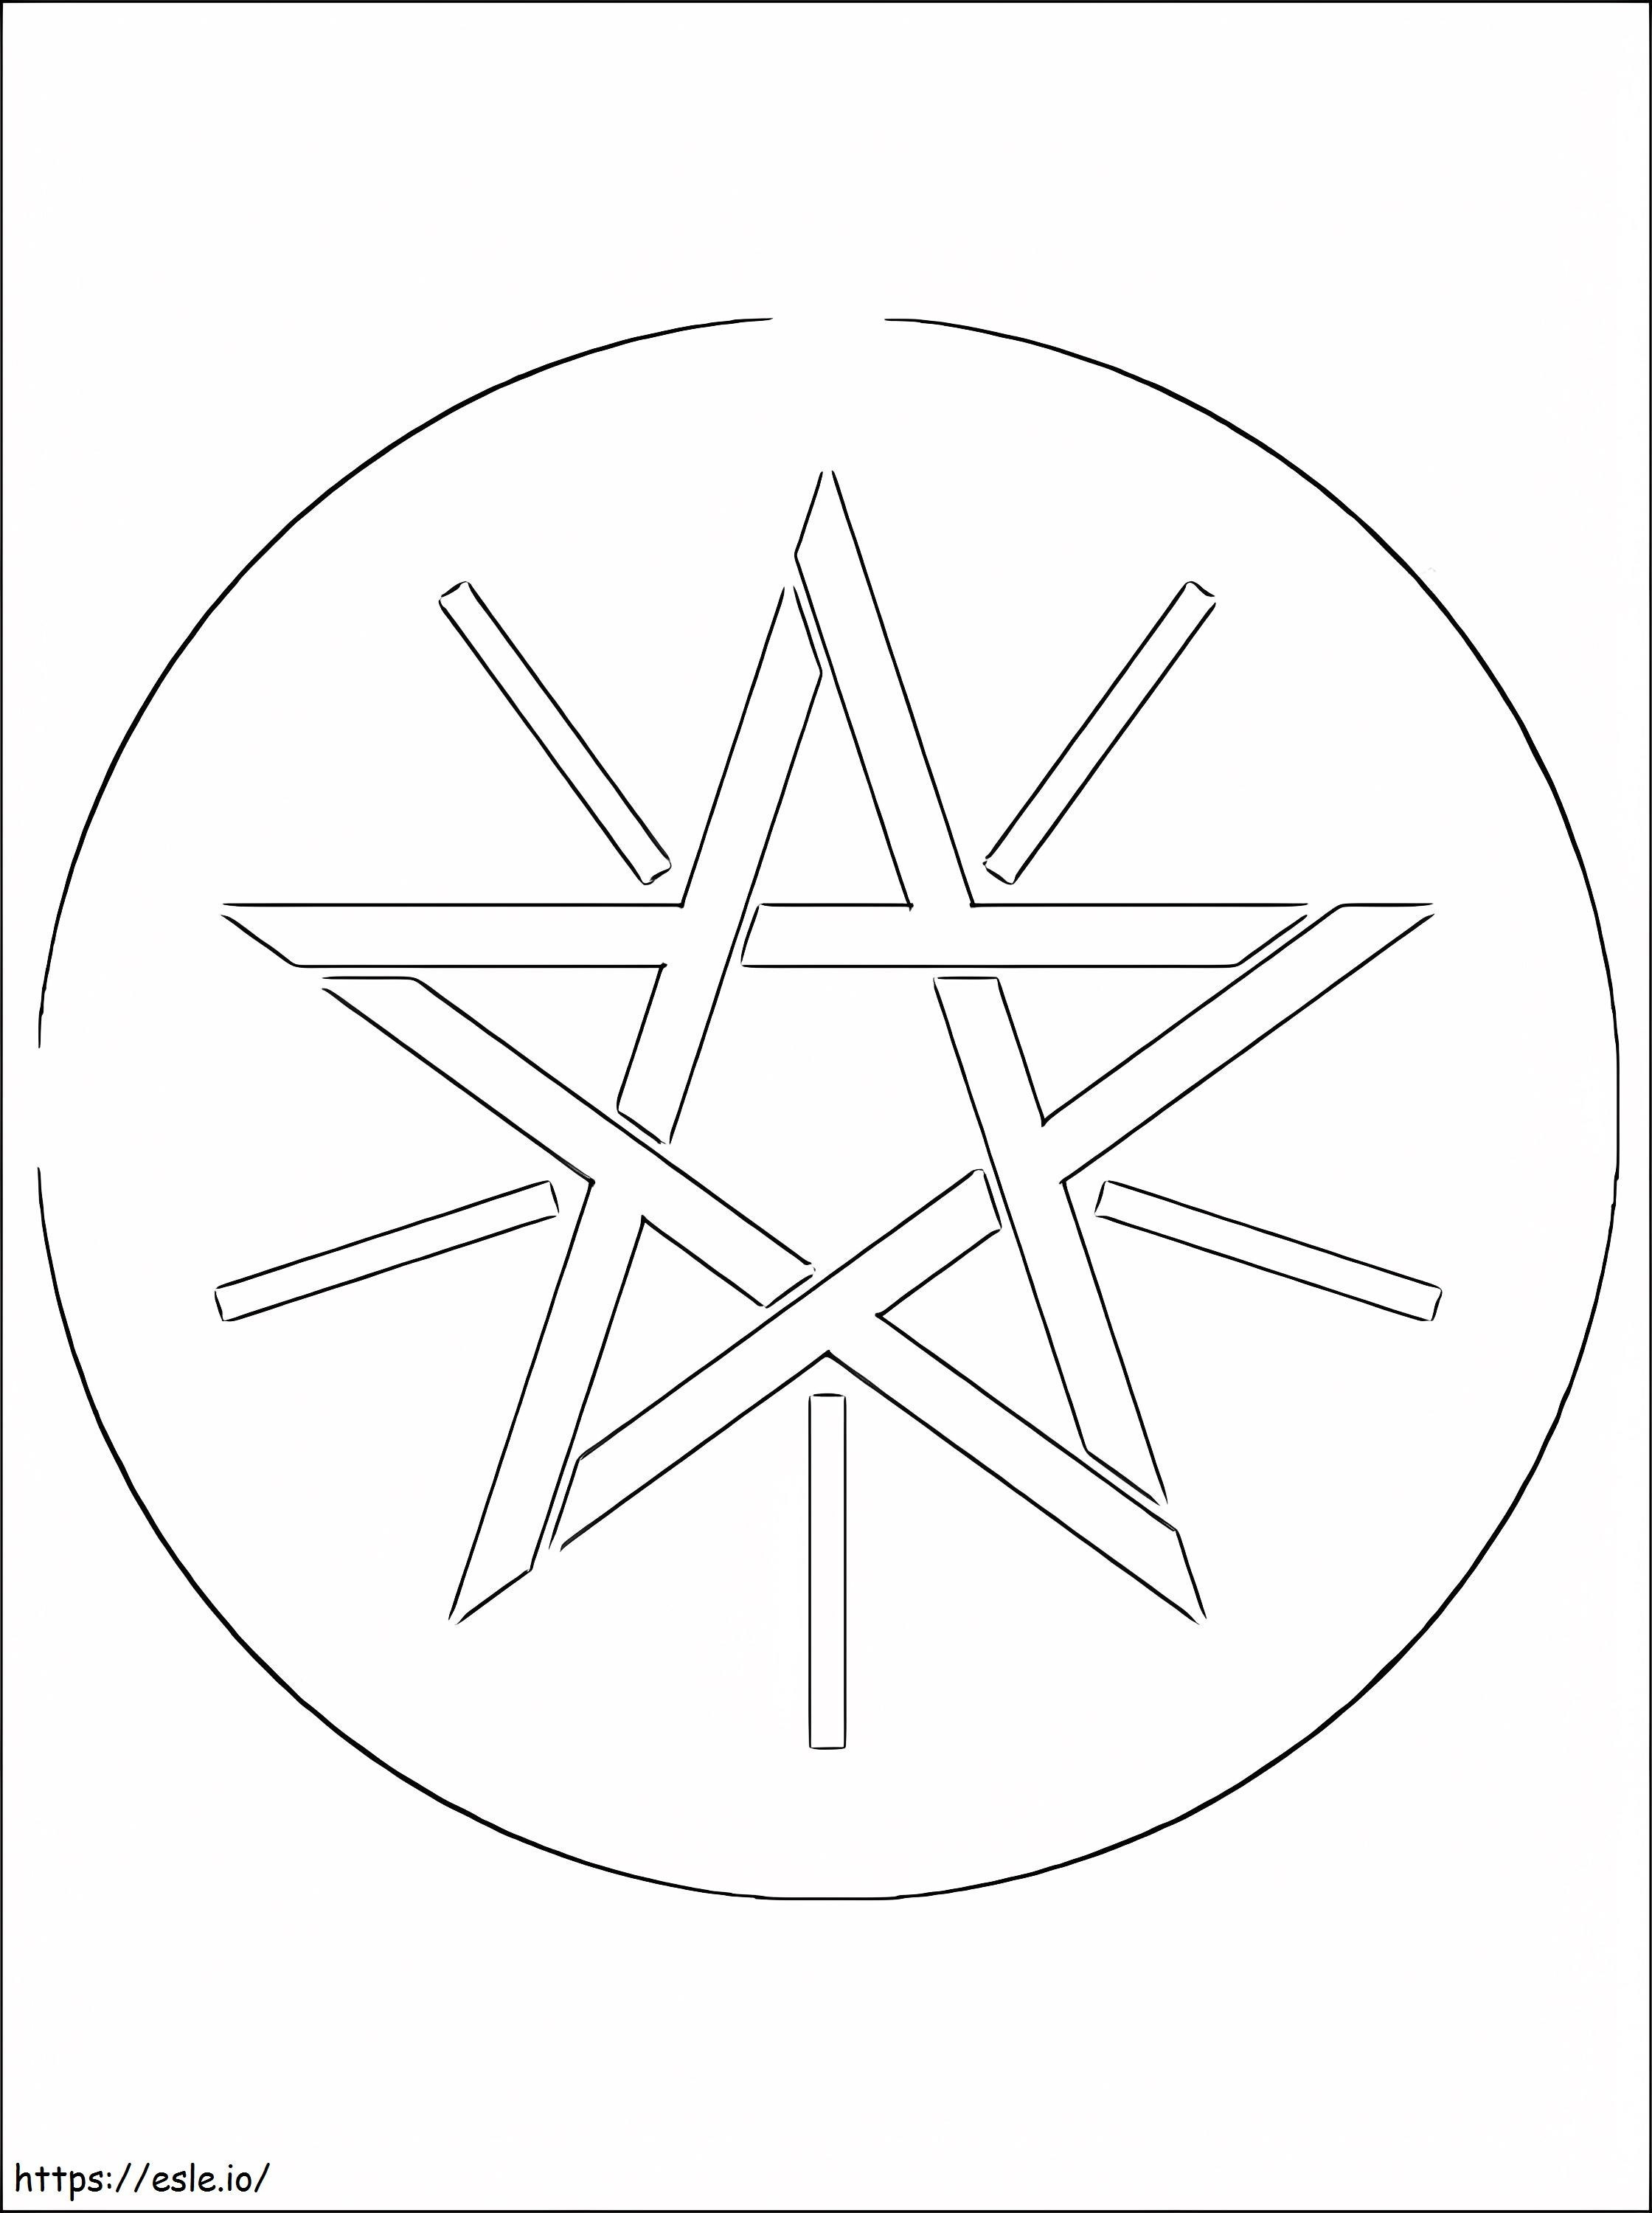 Äthiopisches Wappen ausmalbilder